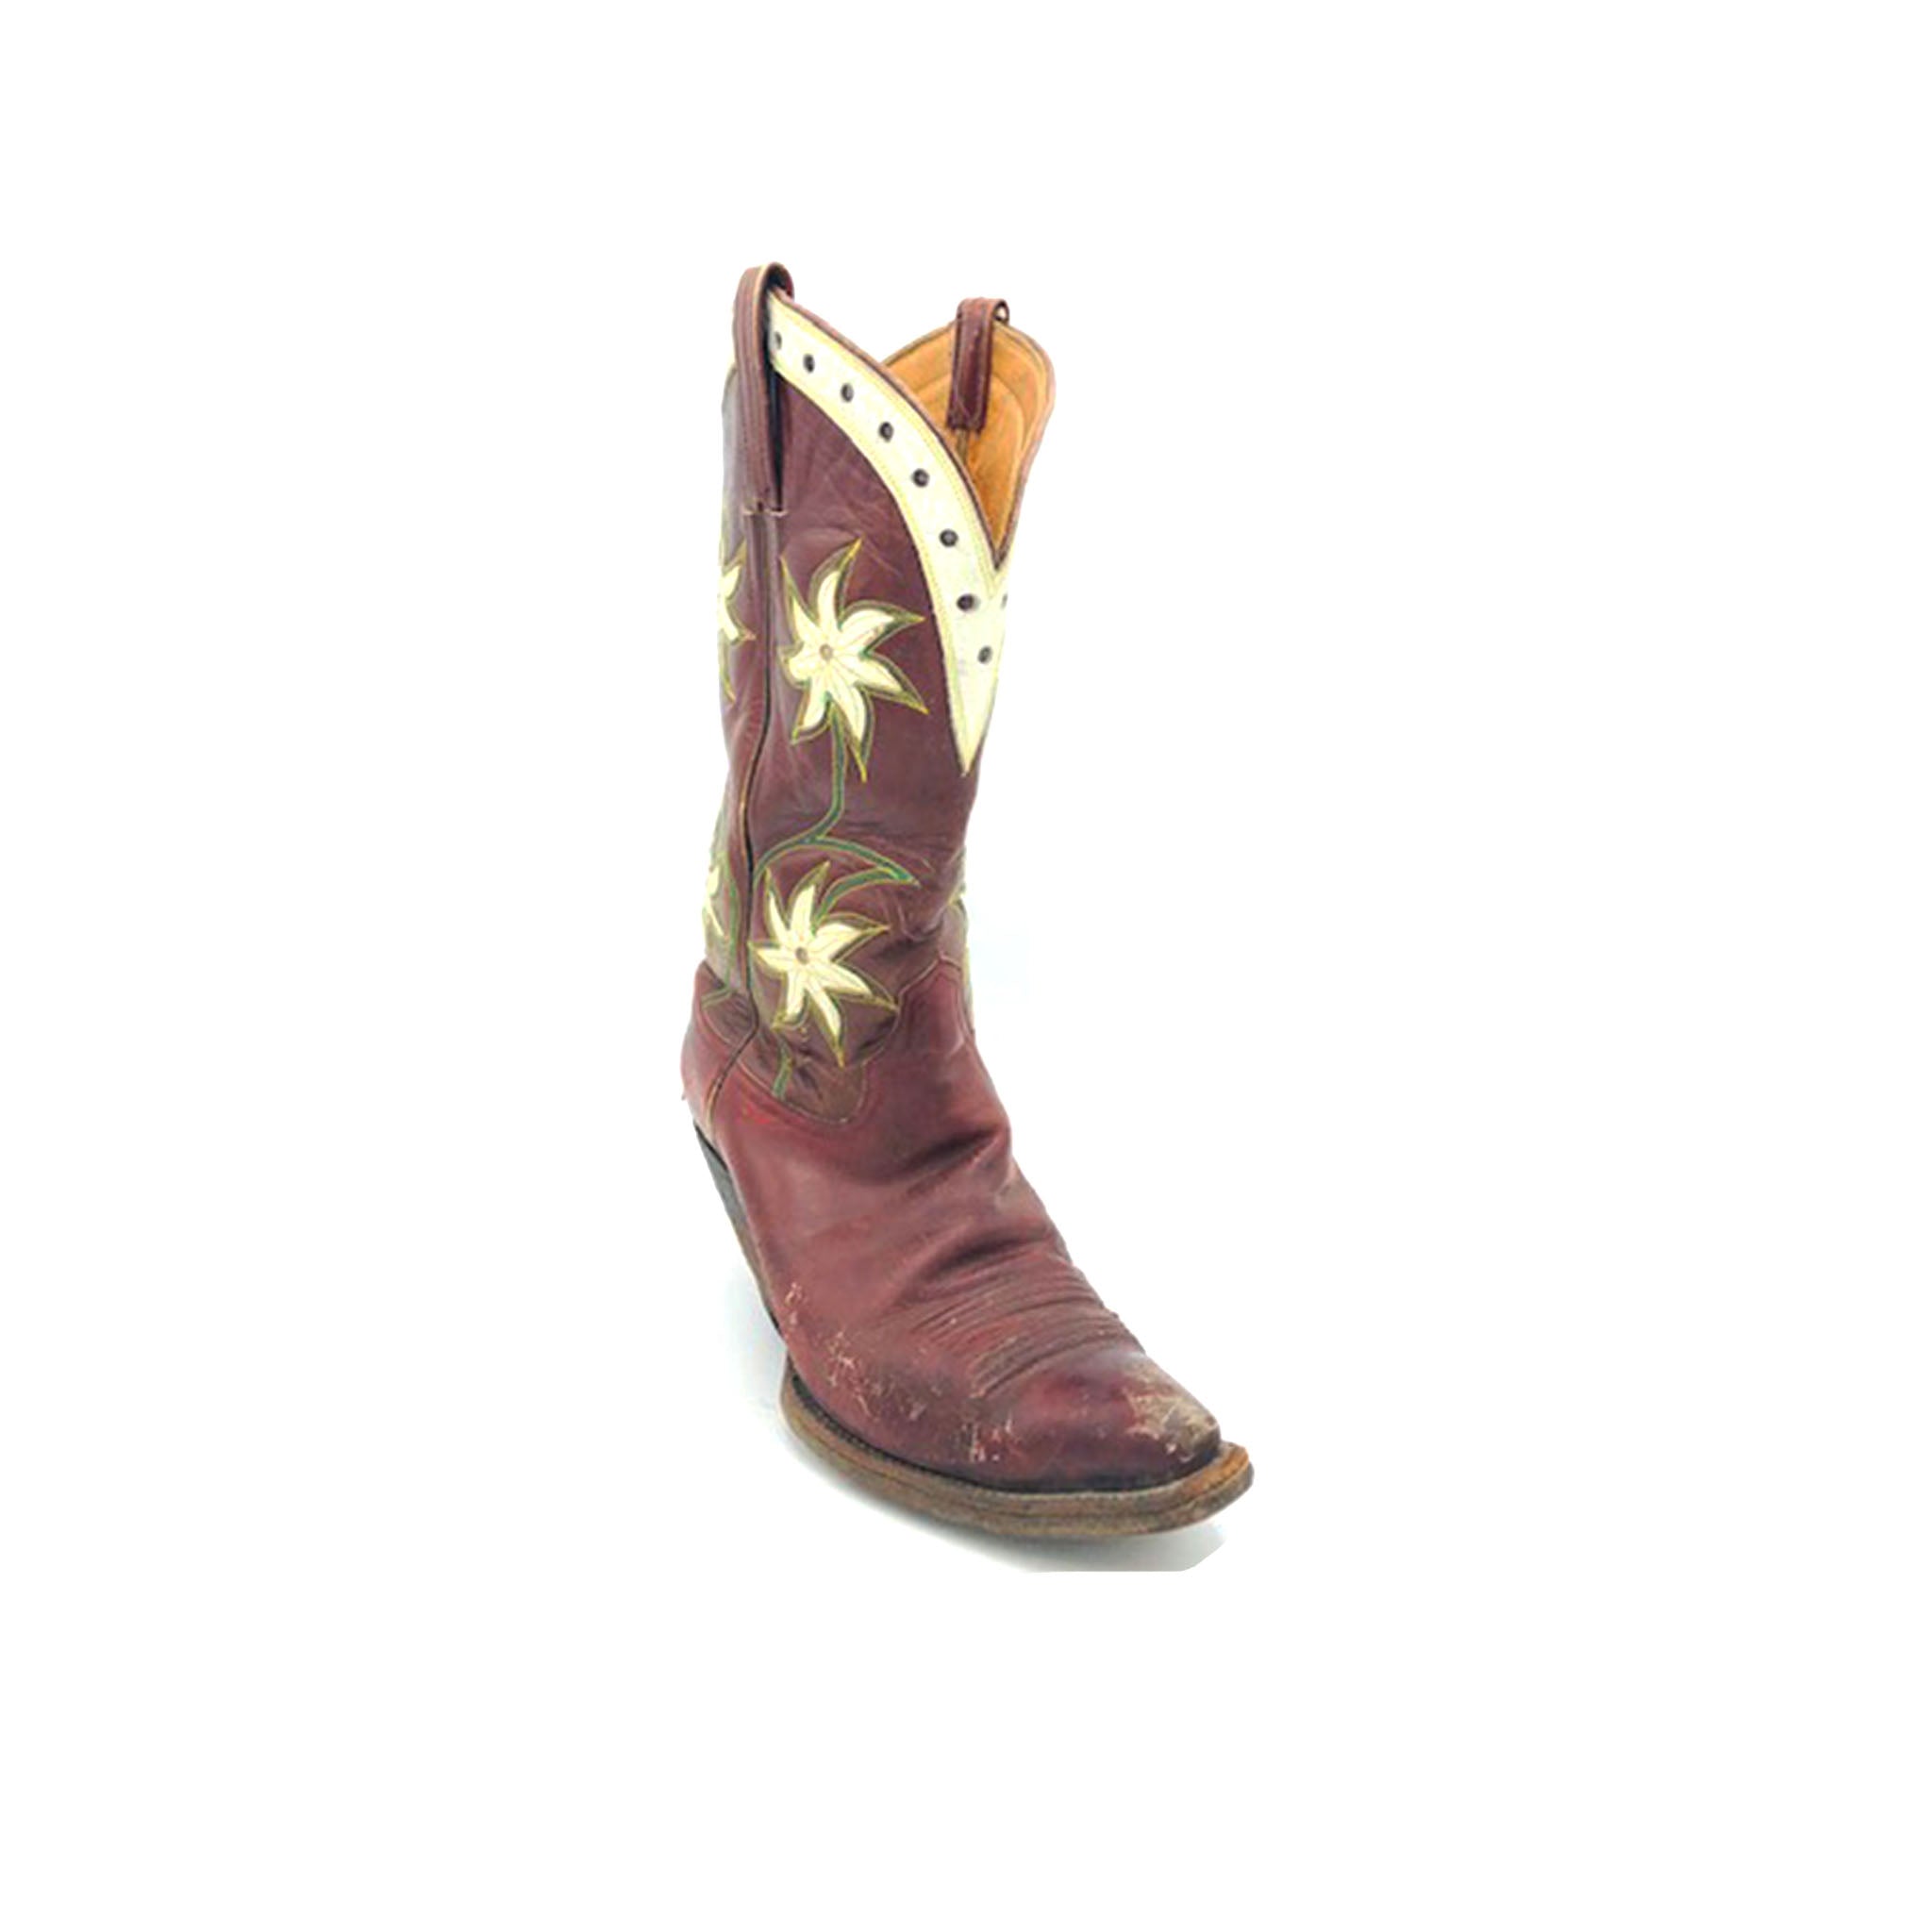 Handmade Women's Cowboy Boots, Burgundy